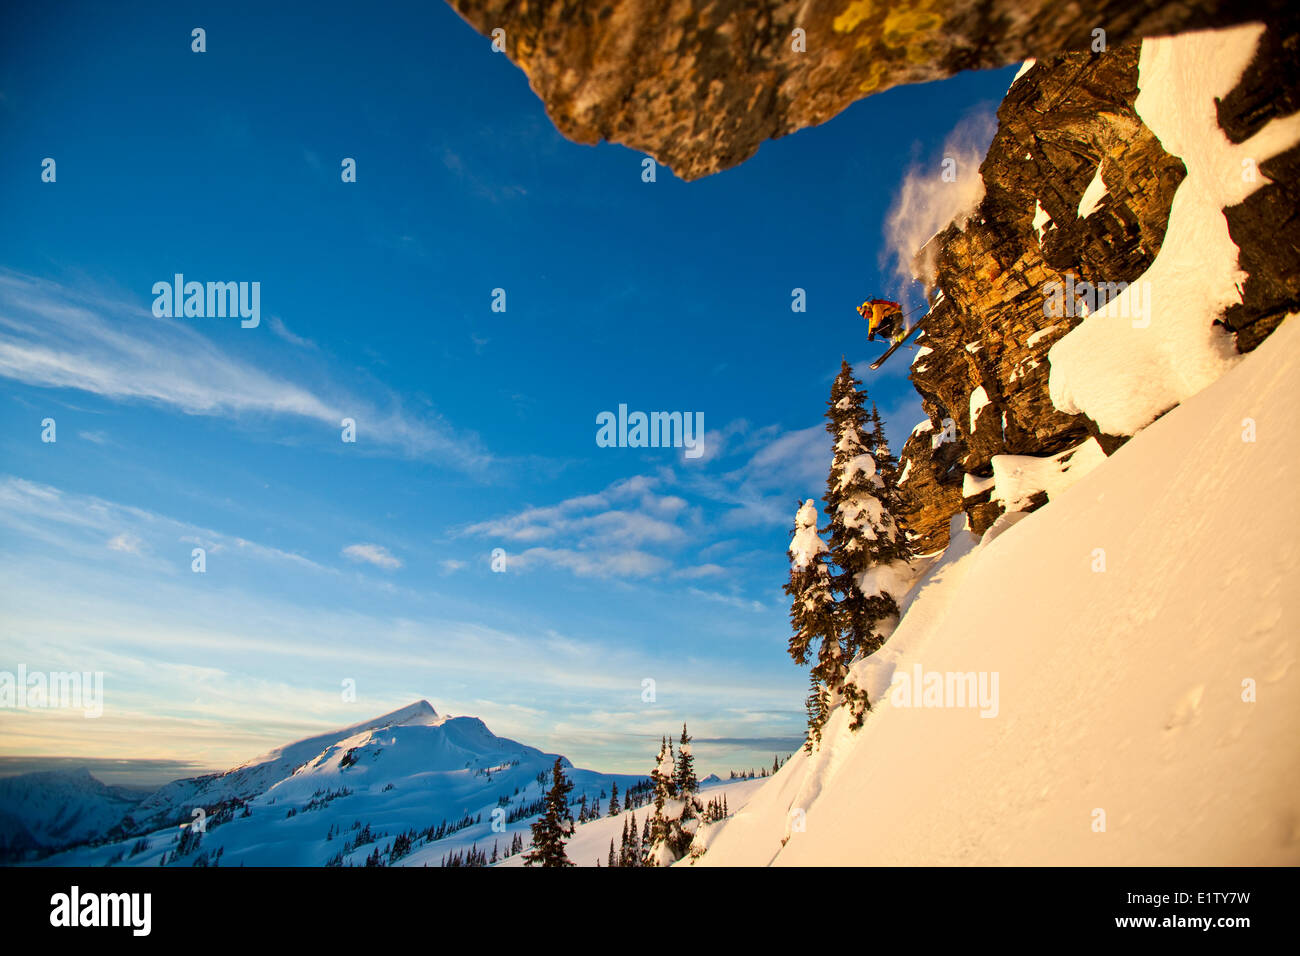 Un maschio di backcountry rider scende una scogliera mentre fuori lo sci alpinismo, Sol Mountain, Monashee Backcountry, Revelstoke, BC Foto Stock